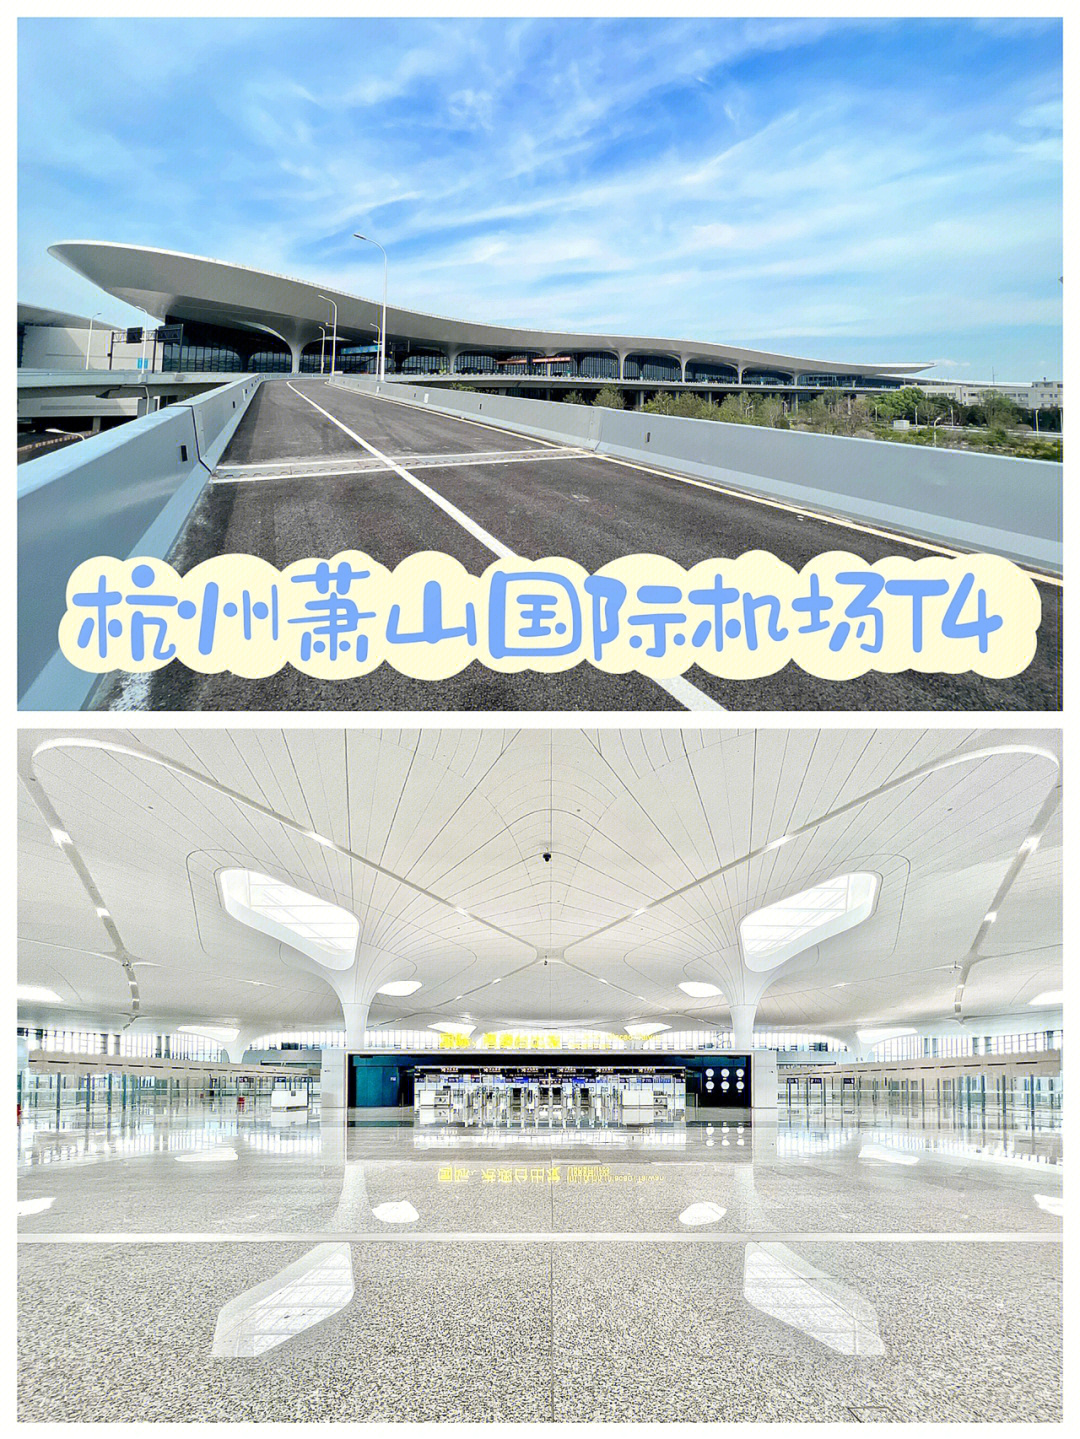 杭州萧山国际机场t4航站楼太惊艳了